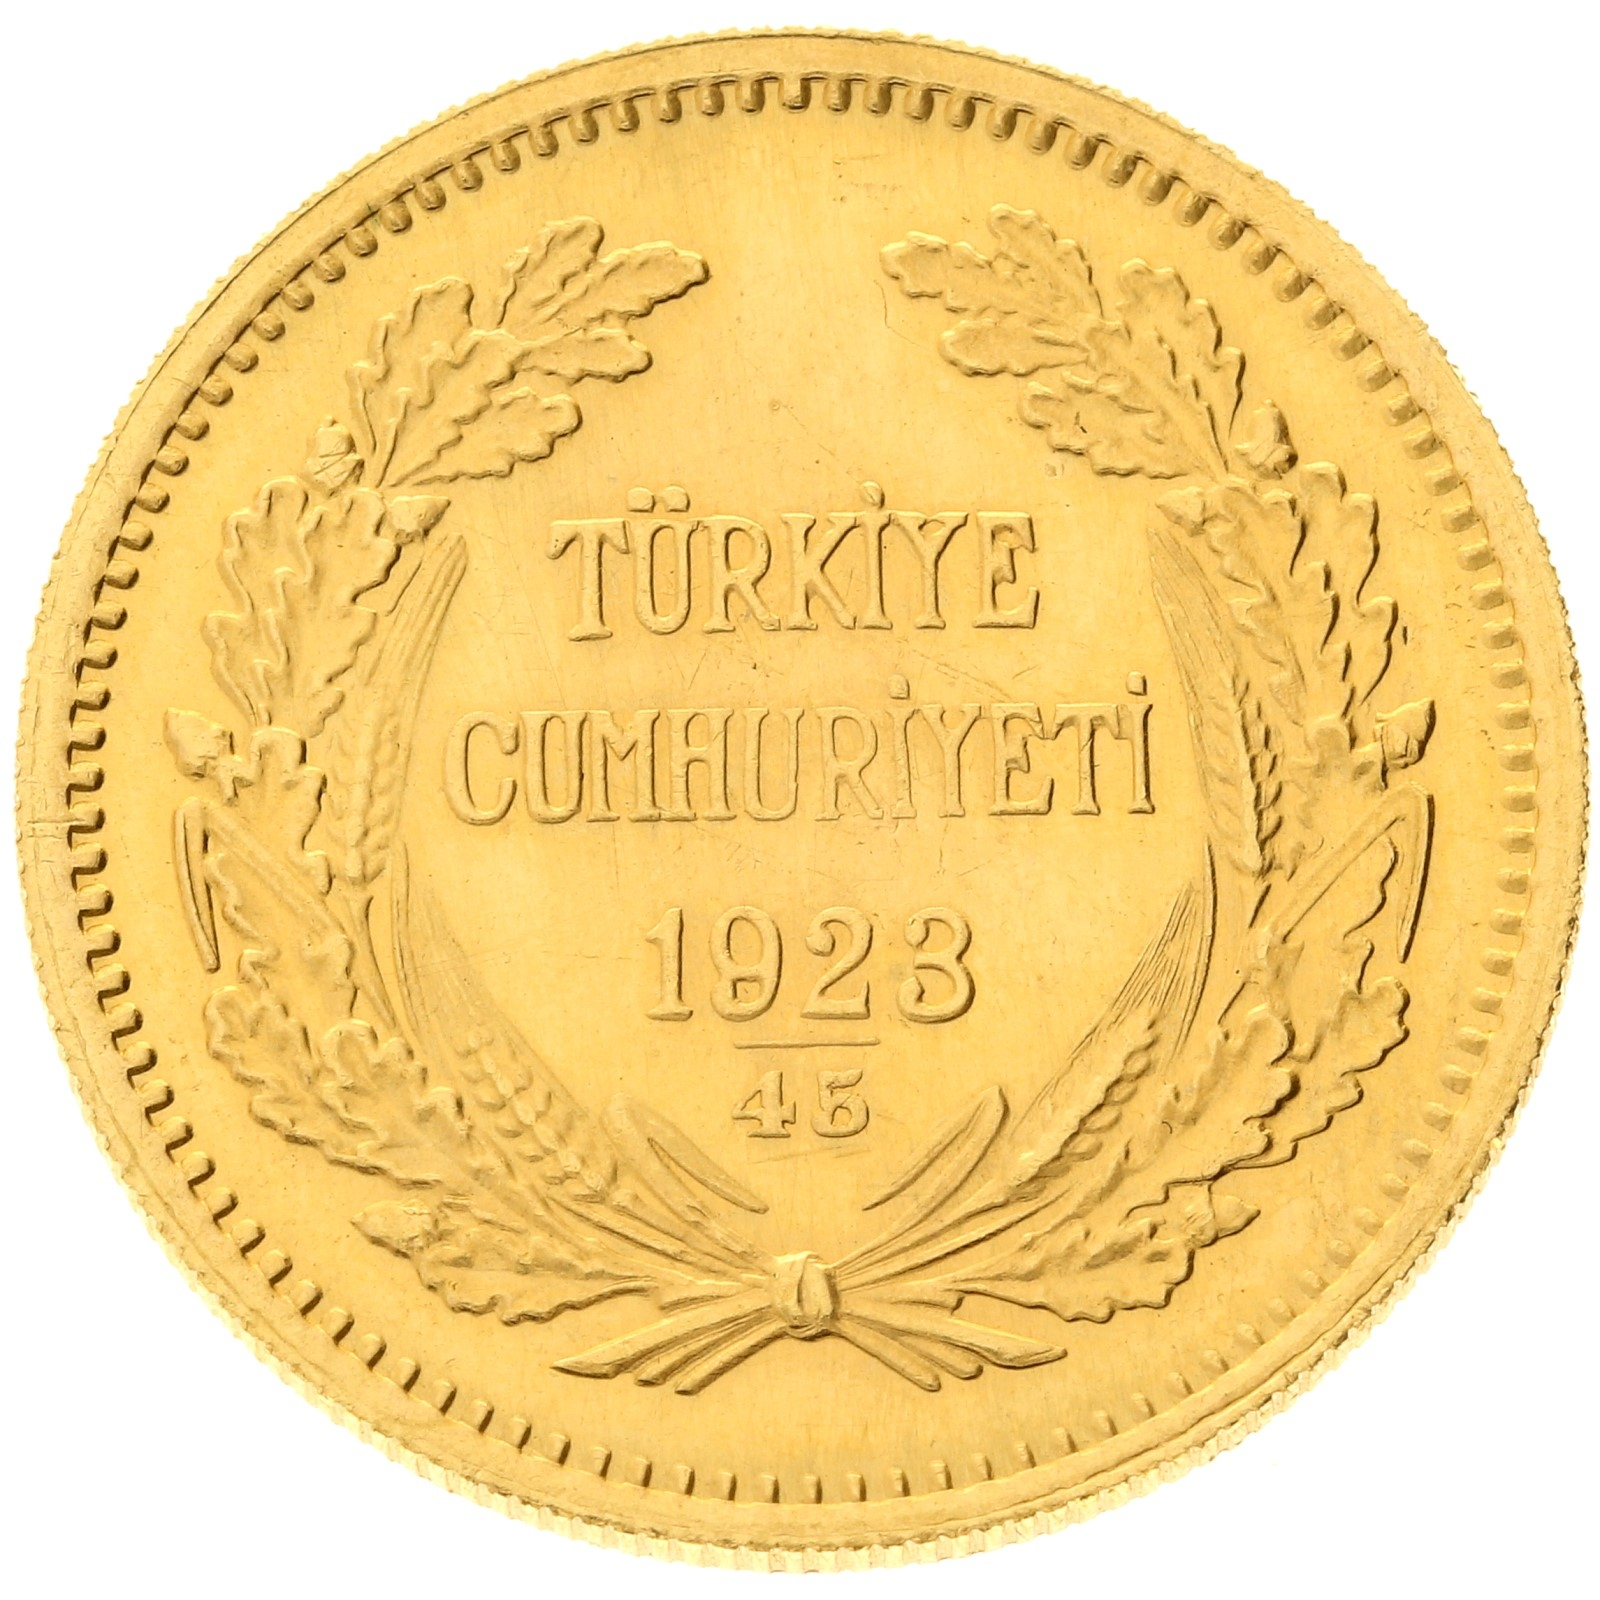 Turkey - 250 kurush - 1923/45 (1968)